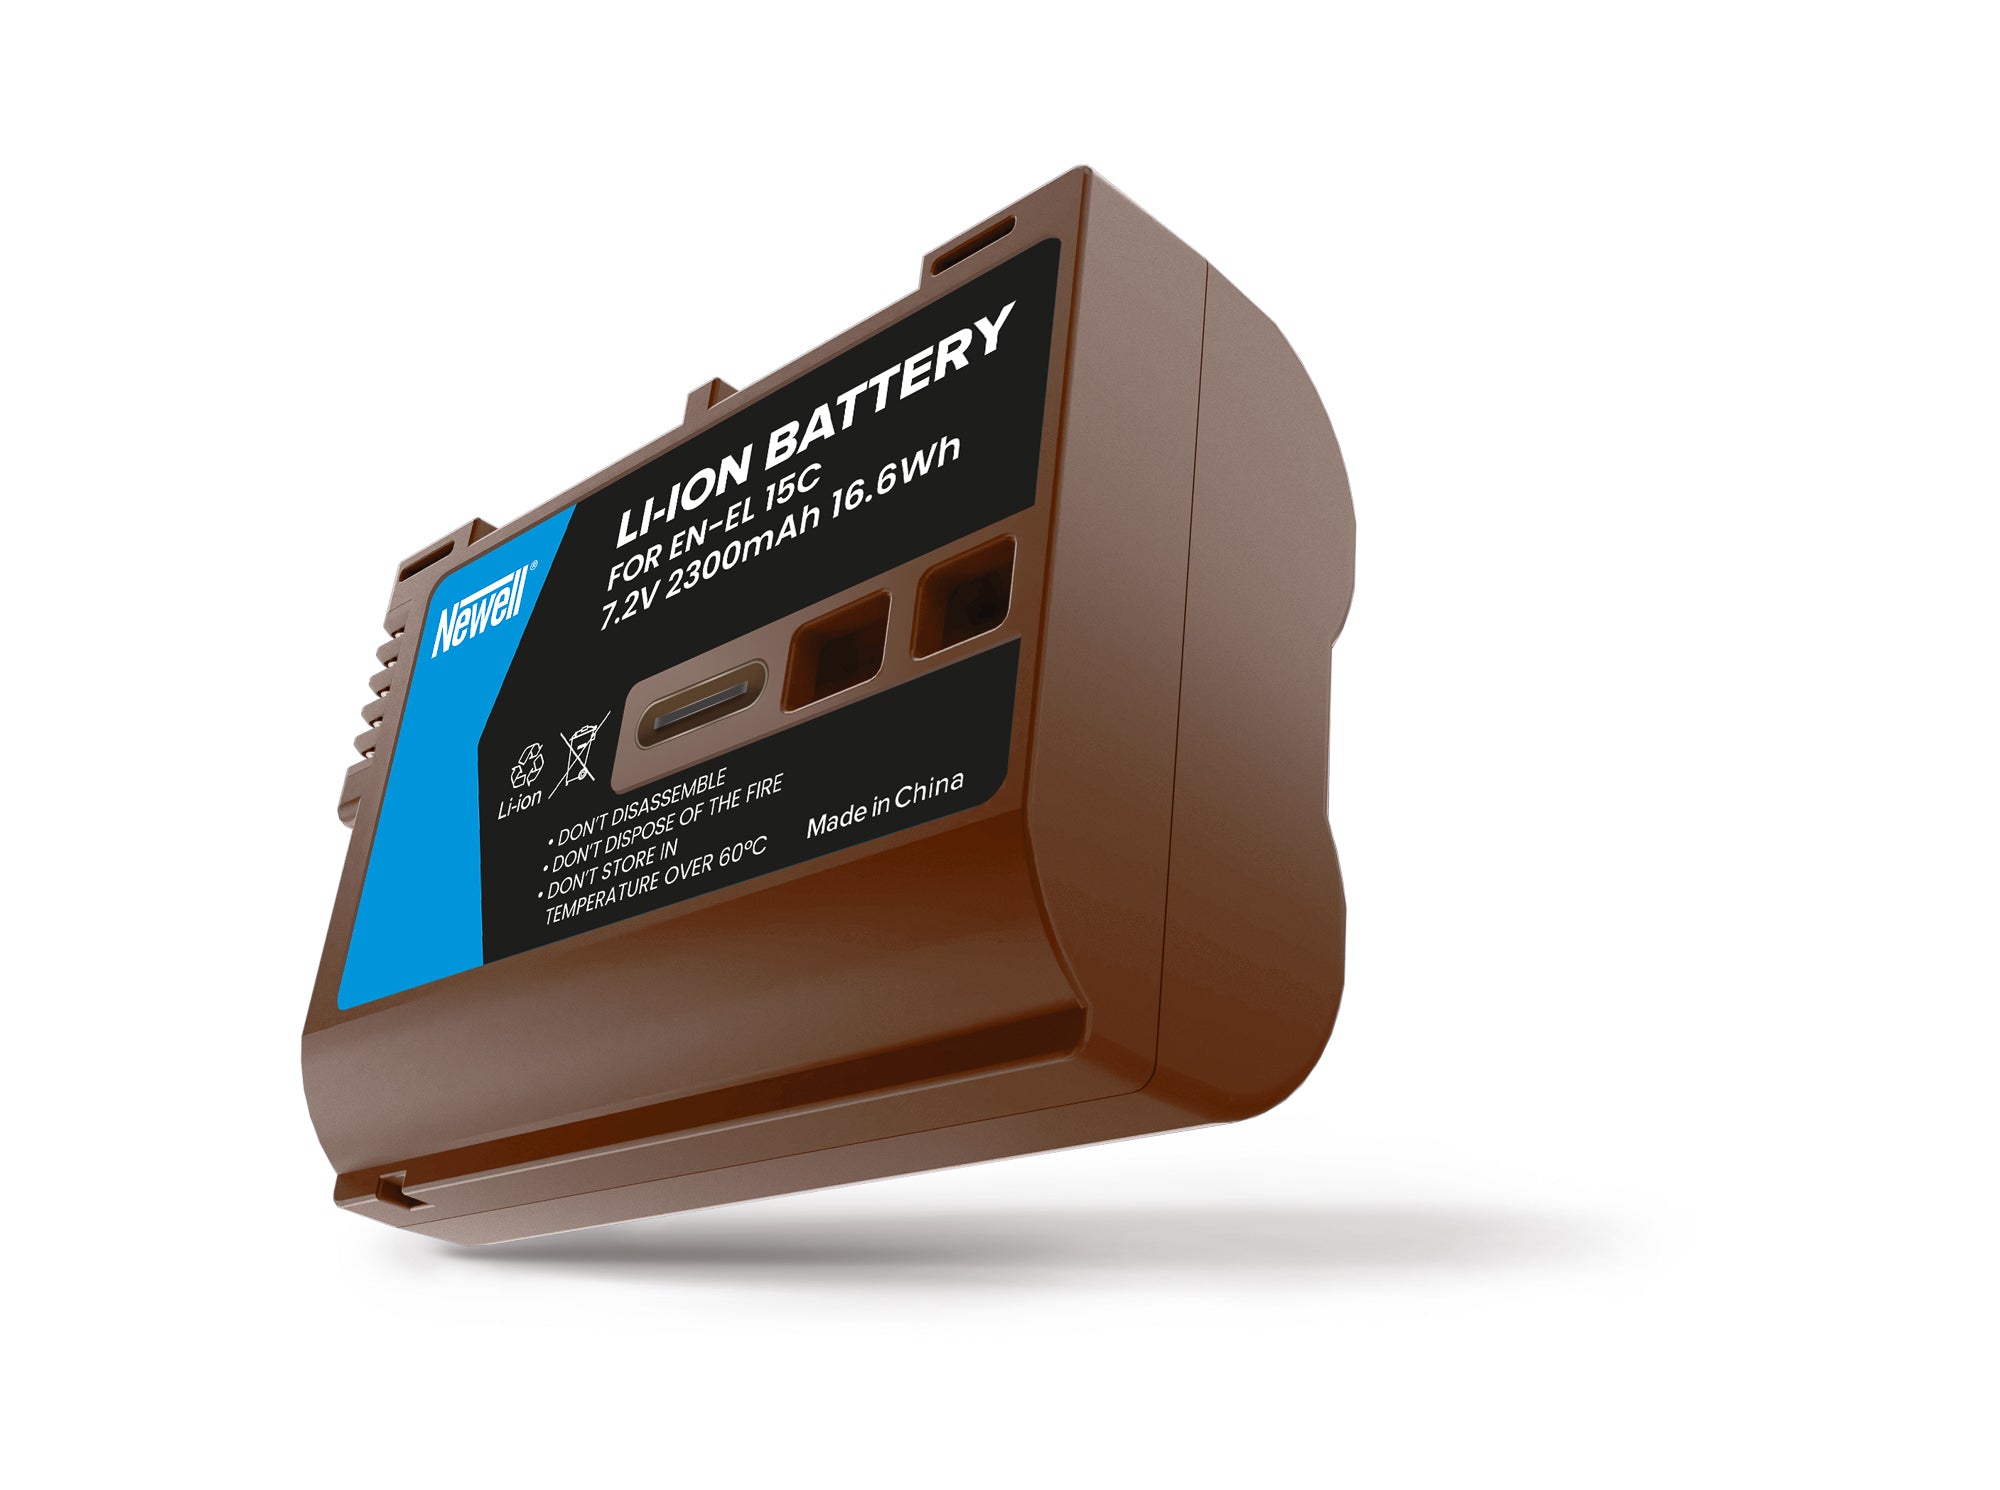 Batterie Newell avec recharge intégrée USB-C EN-EL15C pour Nikon (2300mAh)